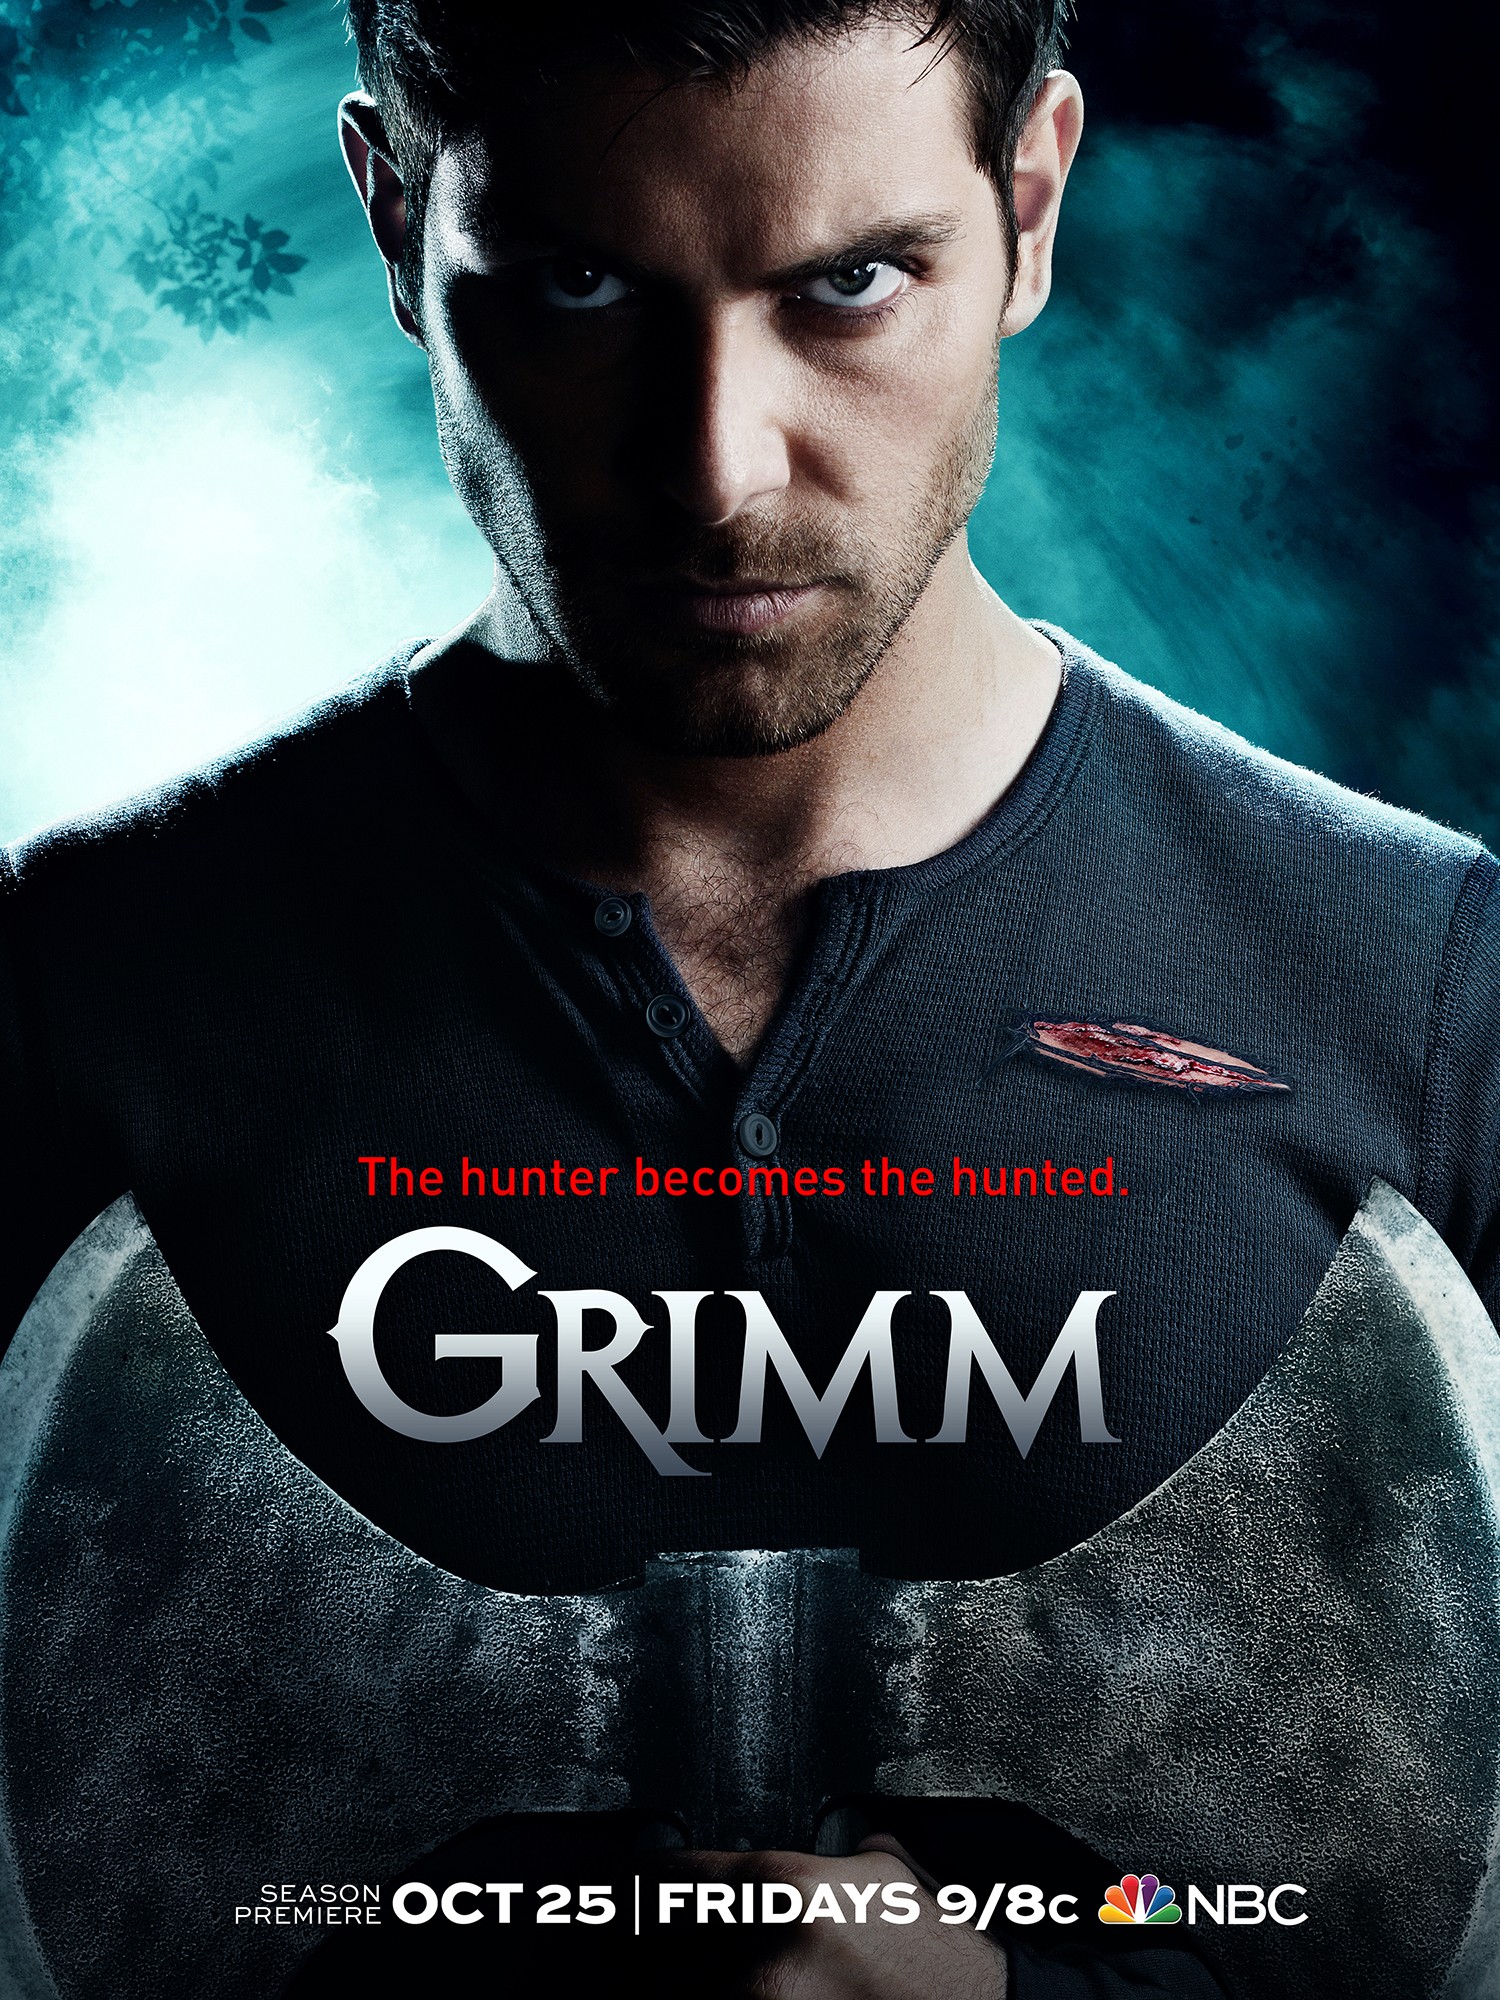 L'affiche de la saison 3 de Grimm nous annonce que 